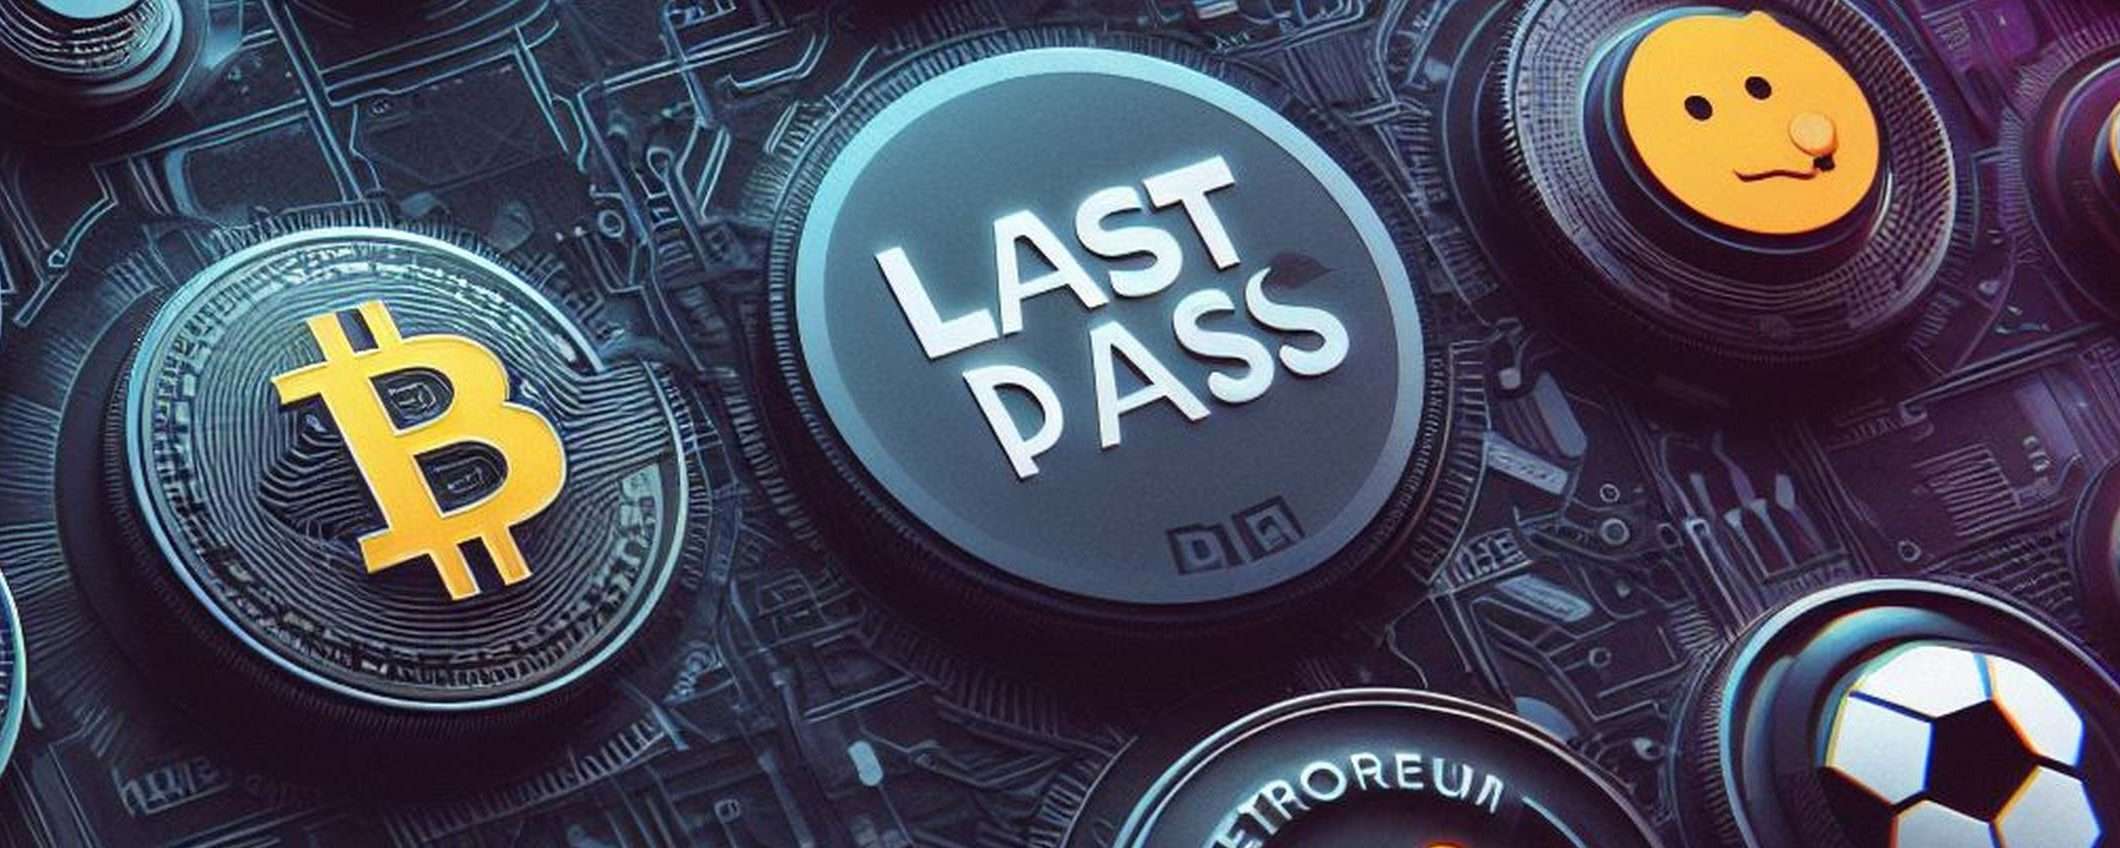 LastPass breach: rubati altri 4 milioni in crypto